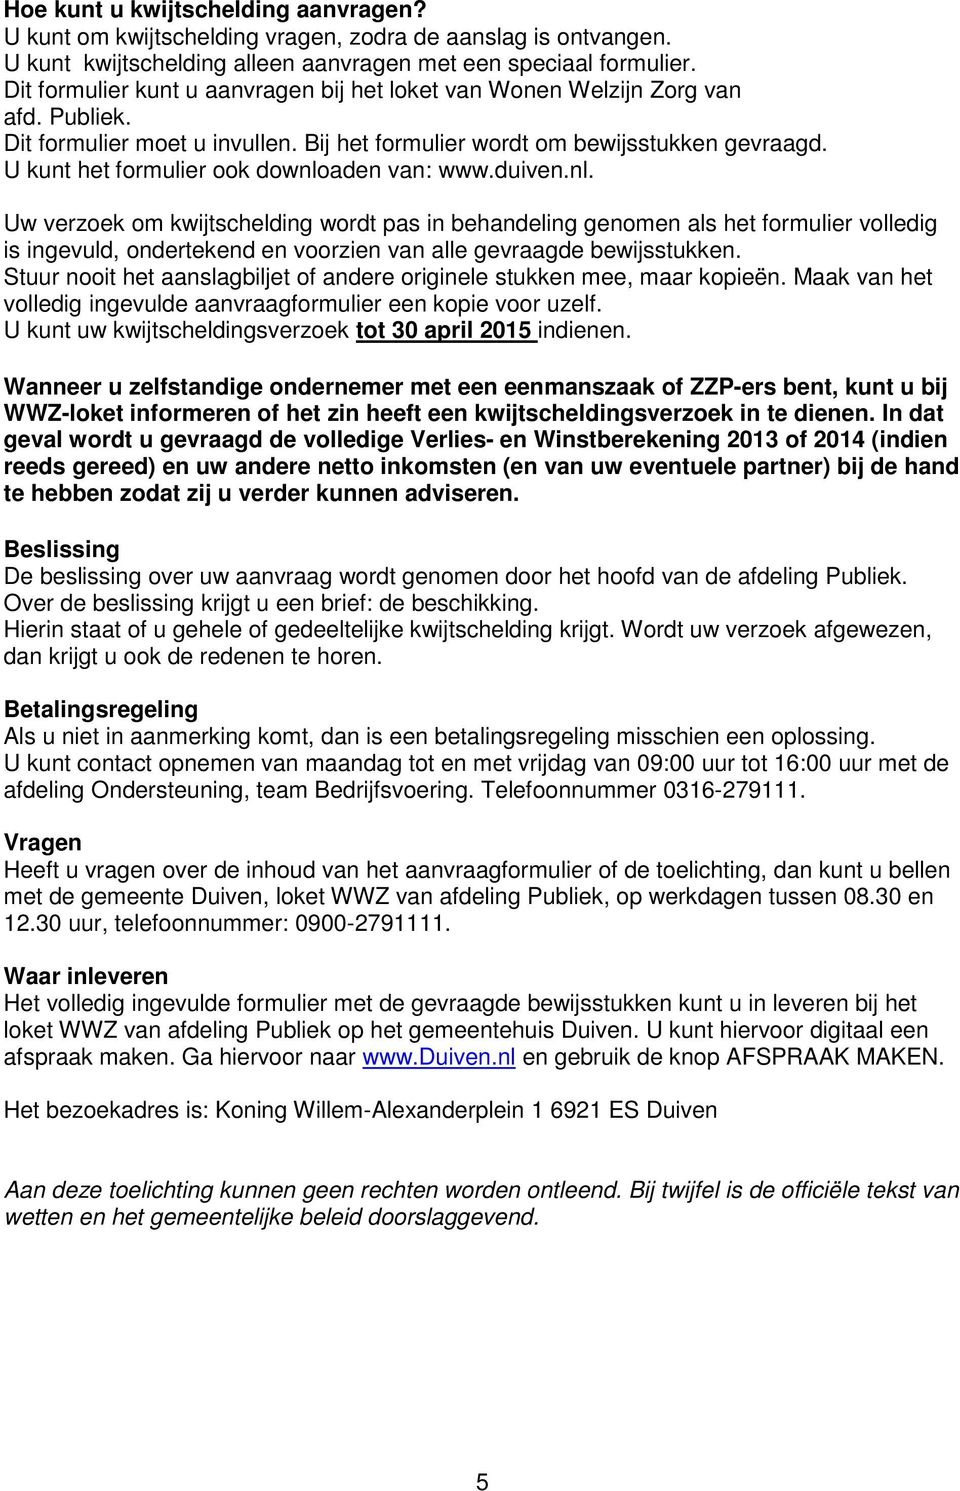 U kunt het formulier ook downloaden van: www.duiven.nl. Uw verzoek om kwijtschelding wordt pas in behandeling genomen als het formulier volledig is ingevuld, ondertekend en voorzien van alle gevraagde bewijsstukken.